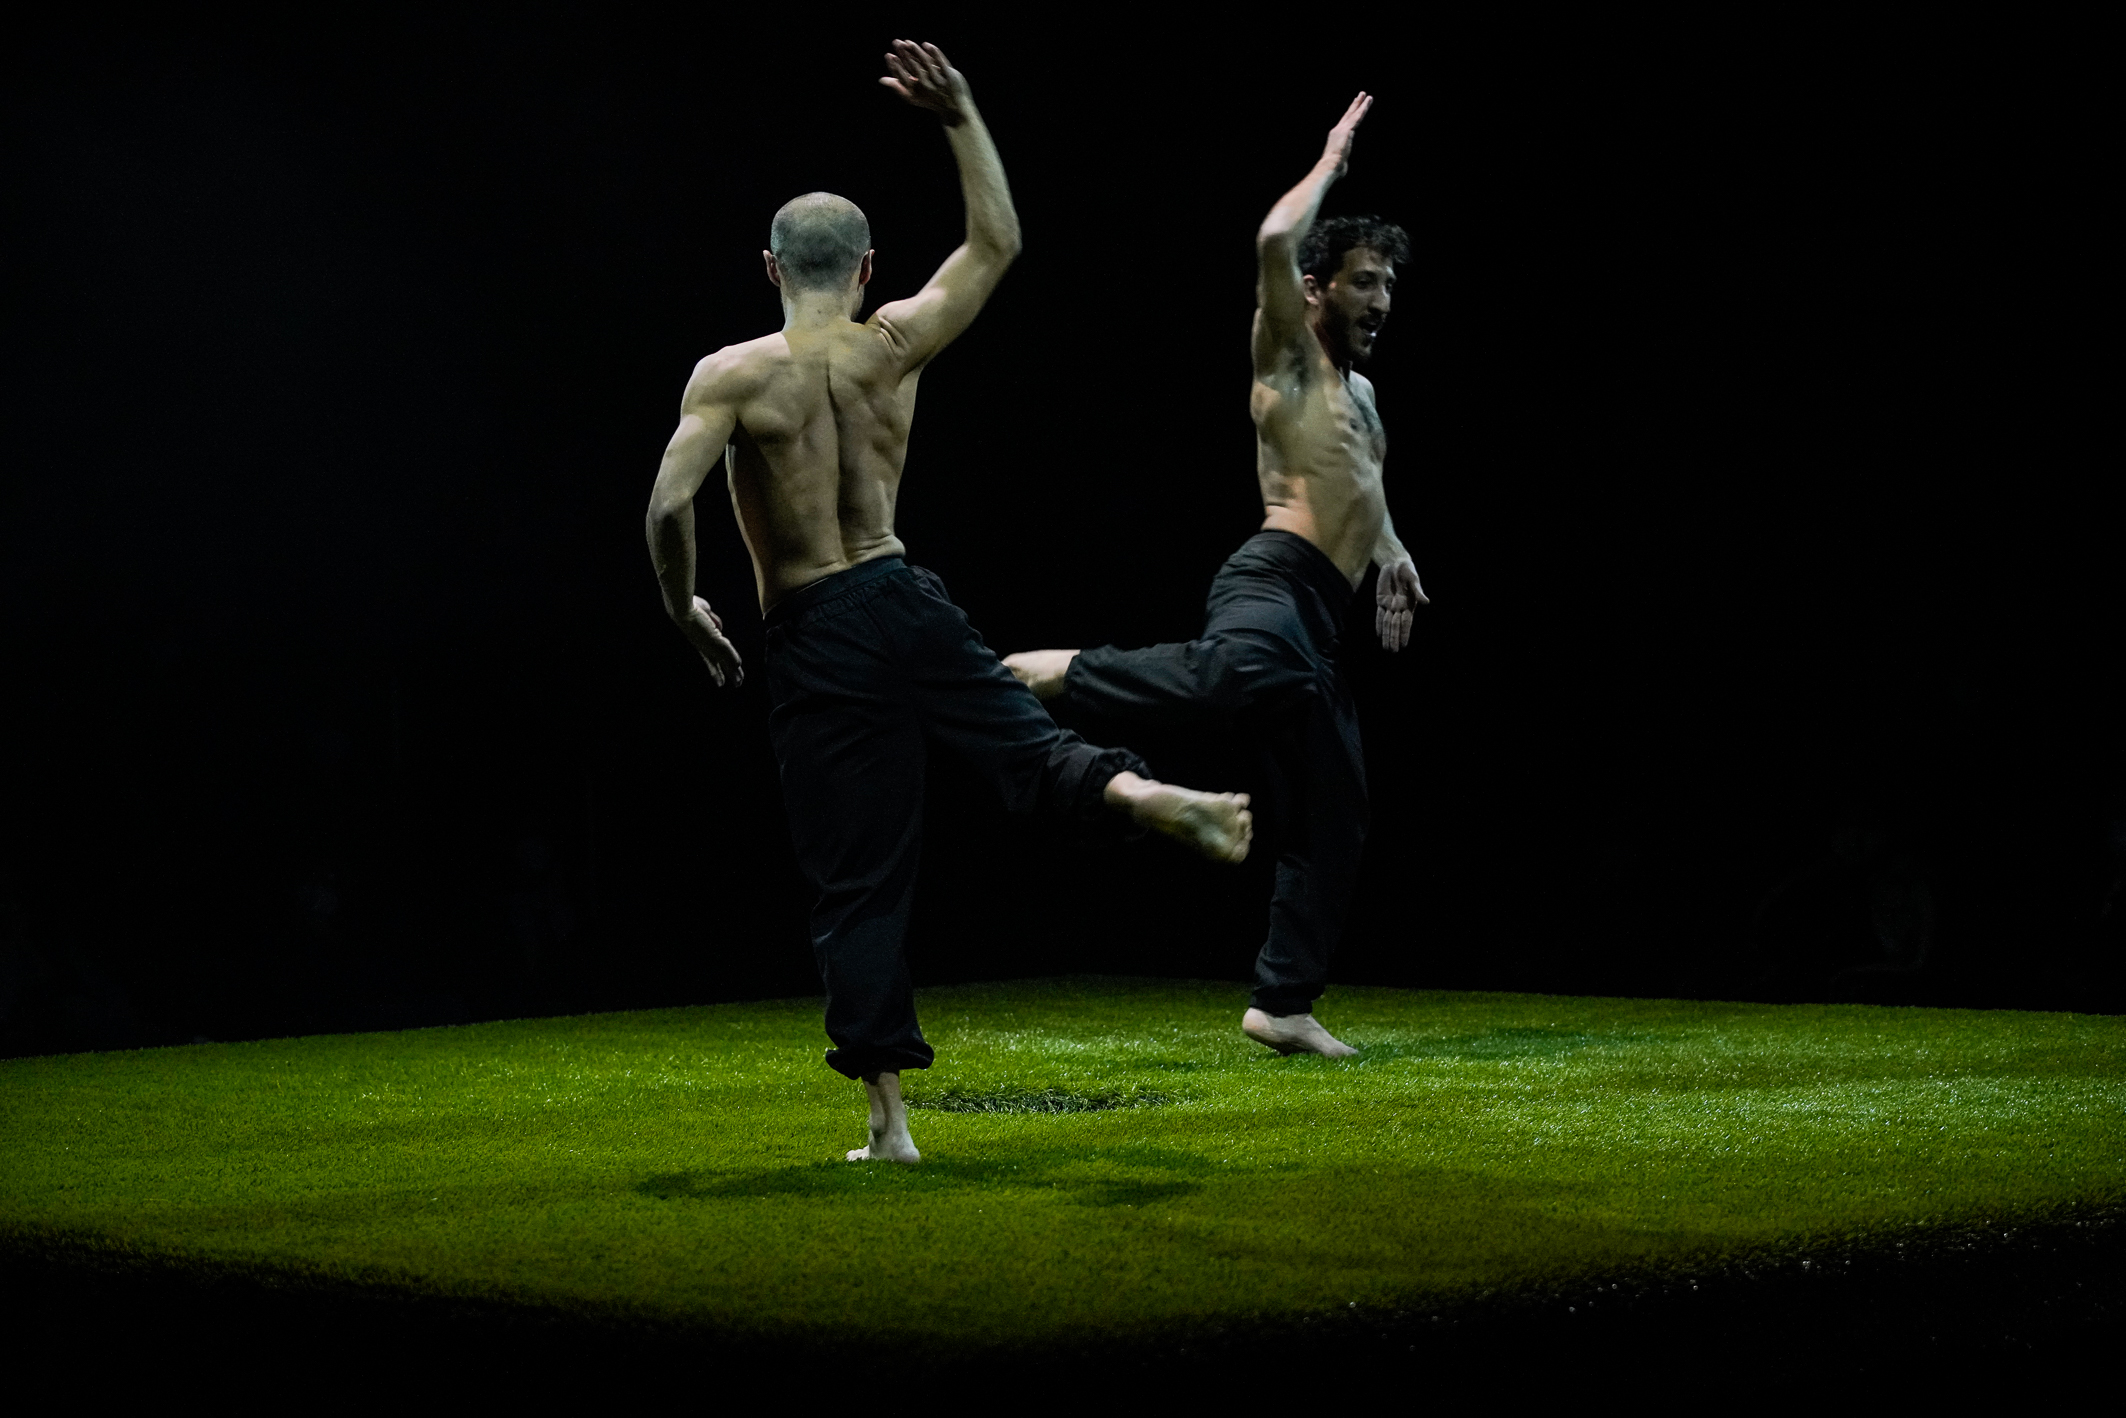 Zwei Tänzer stehen mit schwarzen Hosen und ohne Oberteil tanzend auf einer Grasfläche, die auf einer Bühne ausgebreitet ist.